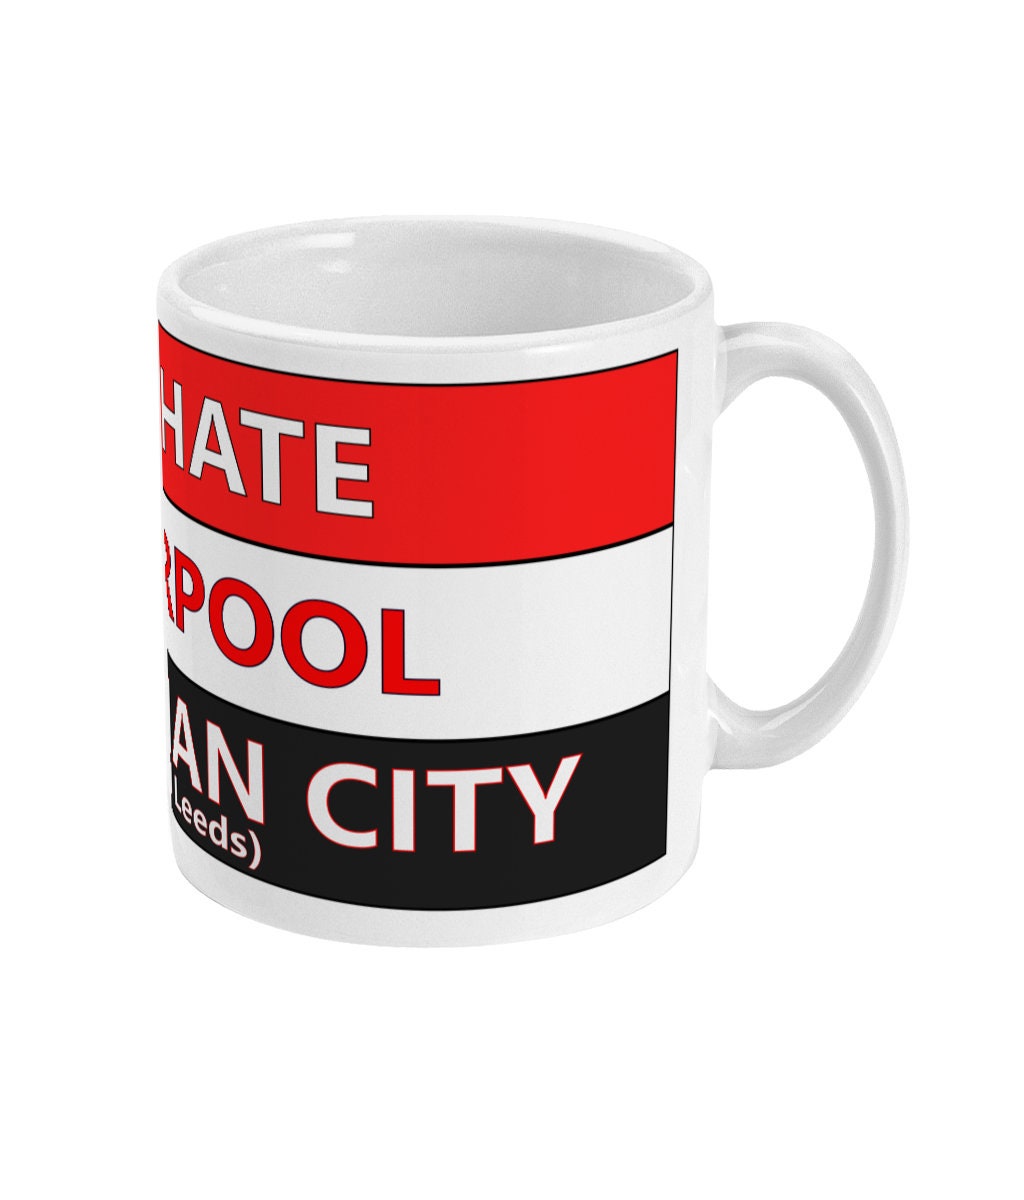 We hate Liverpool and Man City (and Leeds) mug